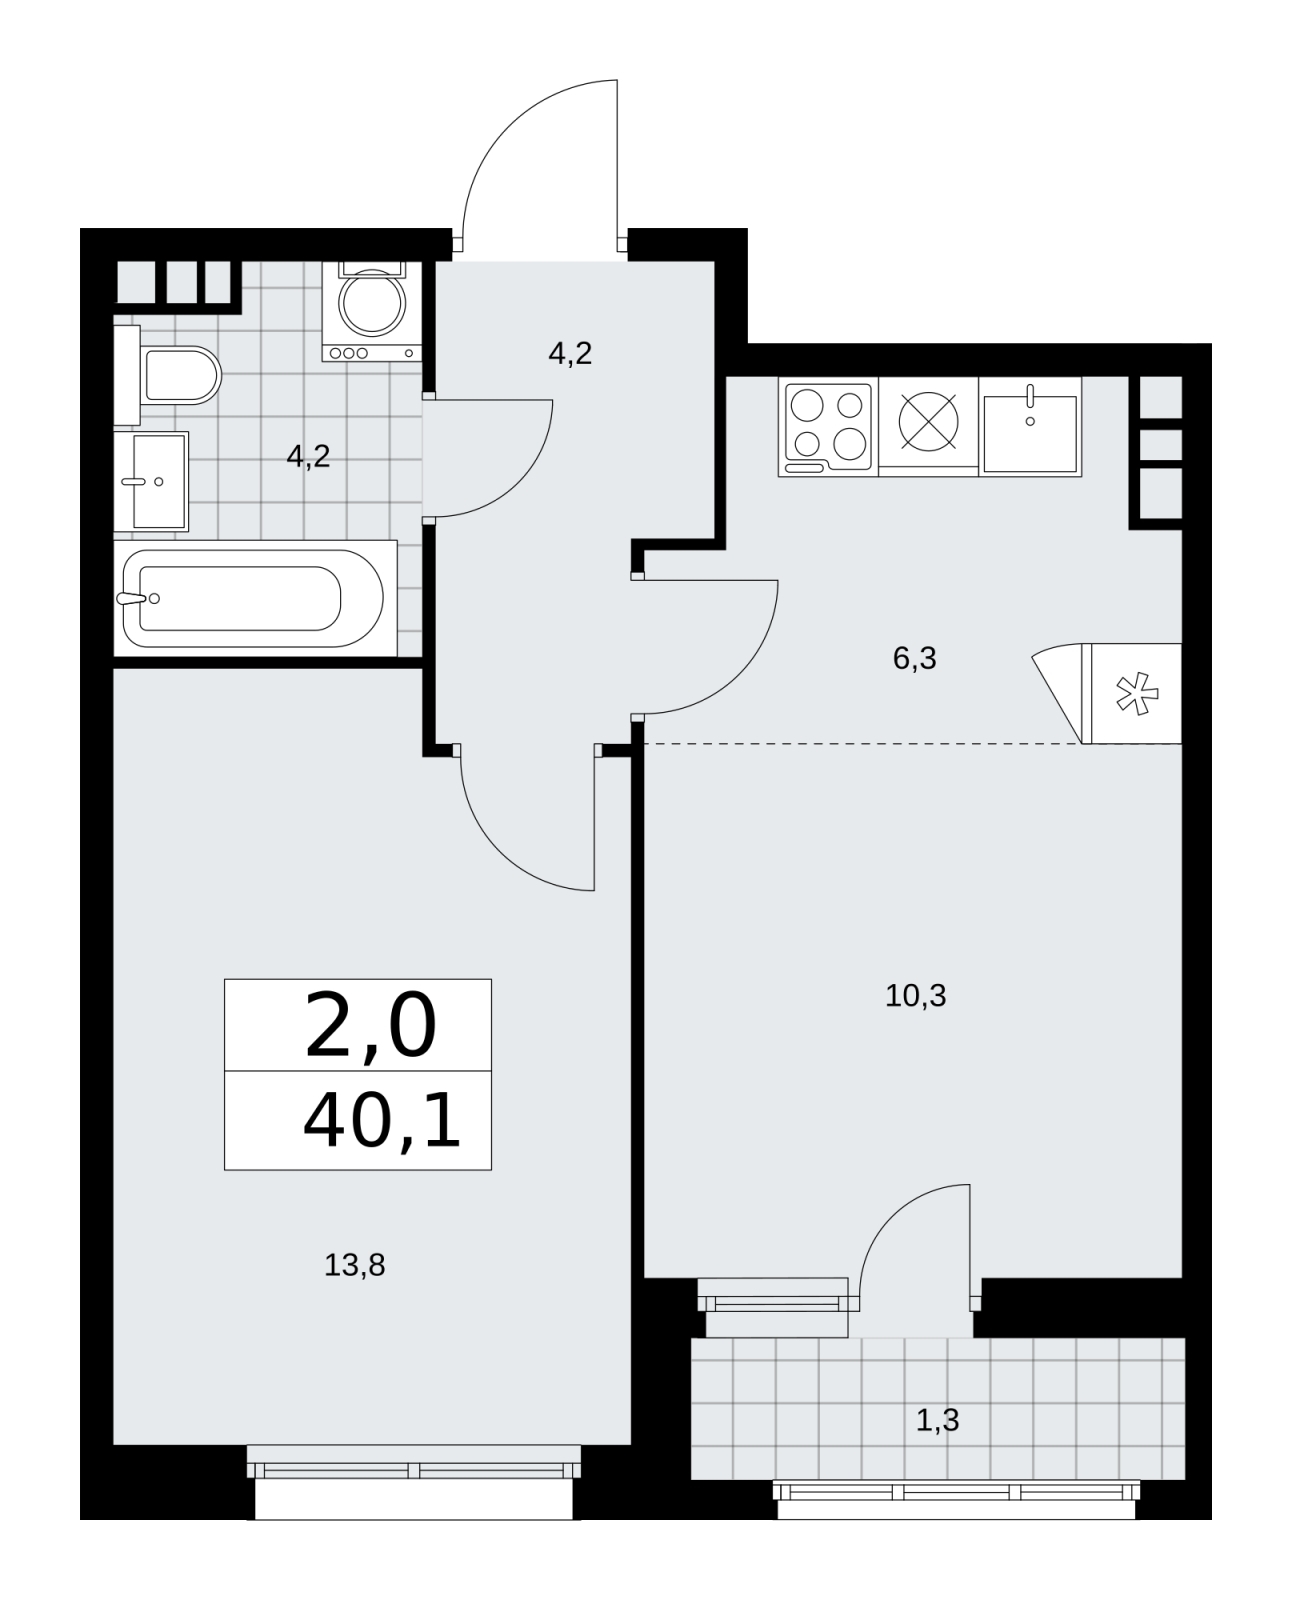 Продается 2-комнатная квартира с европланировкой в новом жилом комплексе, недалеко от метро